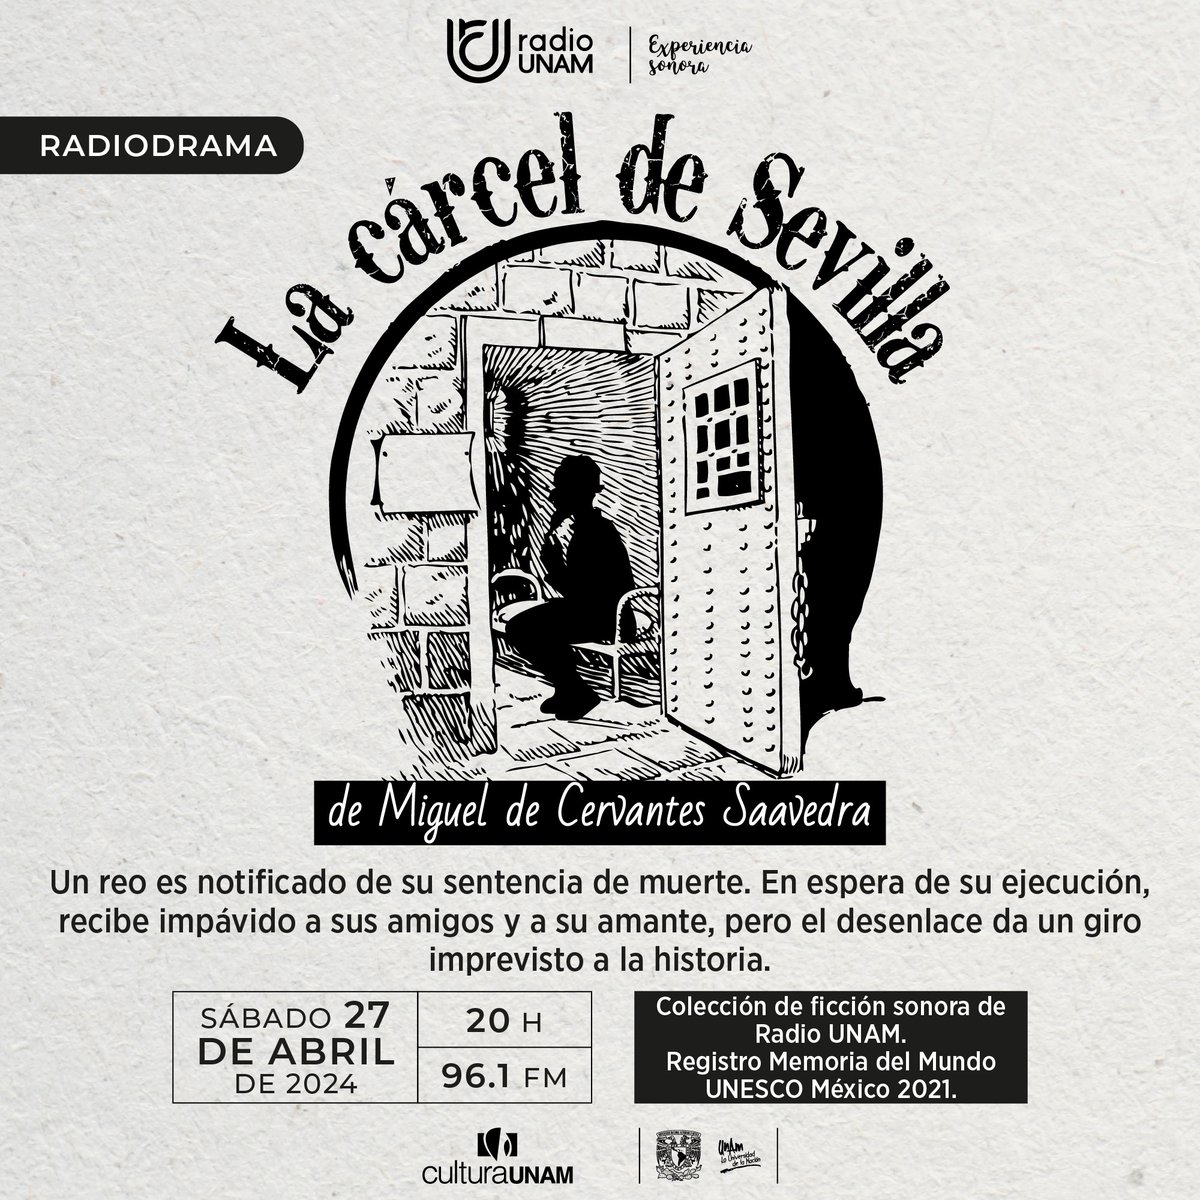 Este sábado de #radiodrama escucharemos 'La cárcel de Sevilla', entremés que es considerado una evocación a la propia experiencia de Miguel de Cervantes. ¡Es #imperdible! 👇